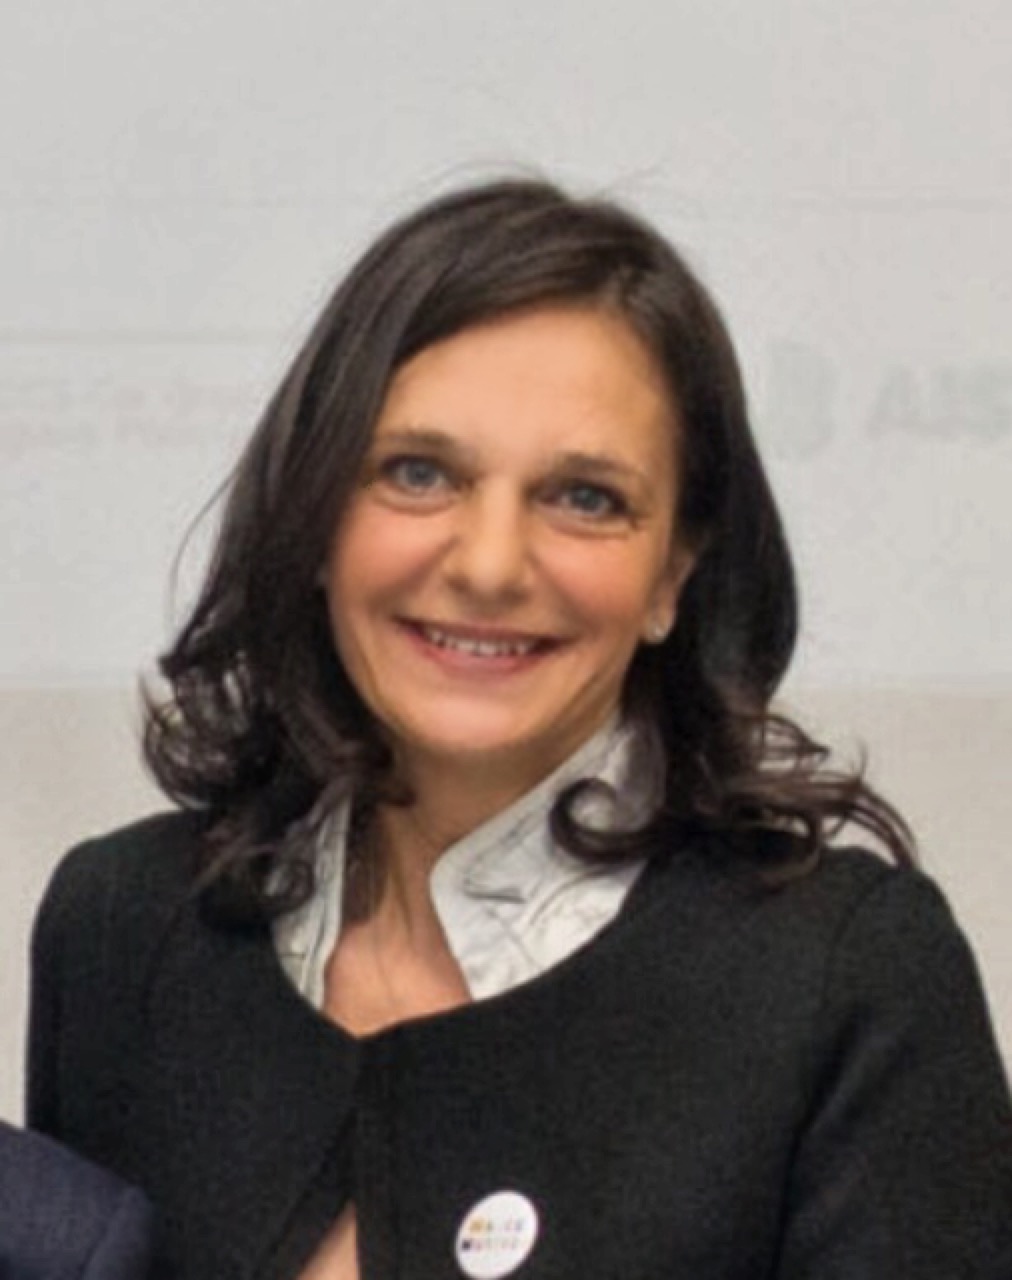 Valeria Puricelli